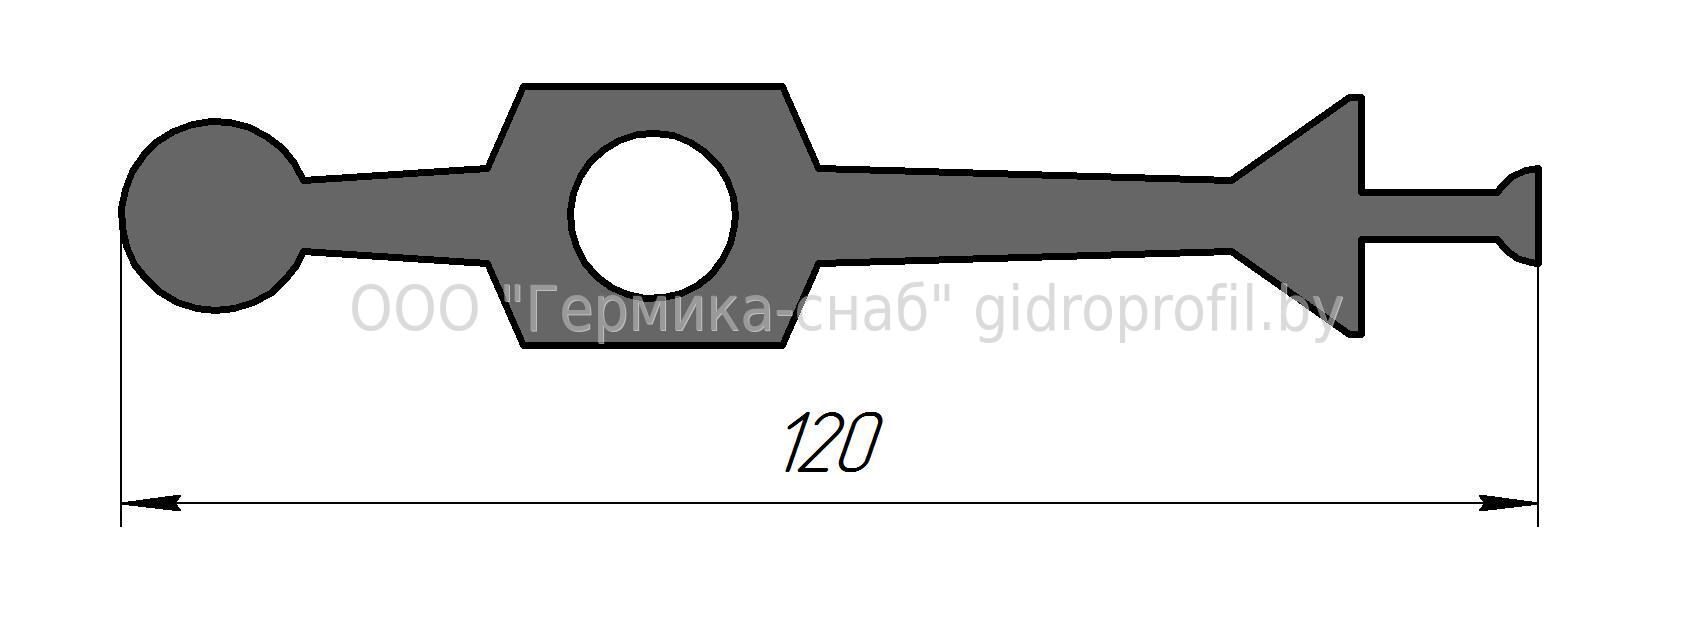 Гидрошпонка ЦДР-120, Резина, ширина 120 мм